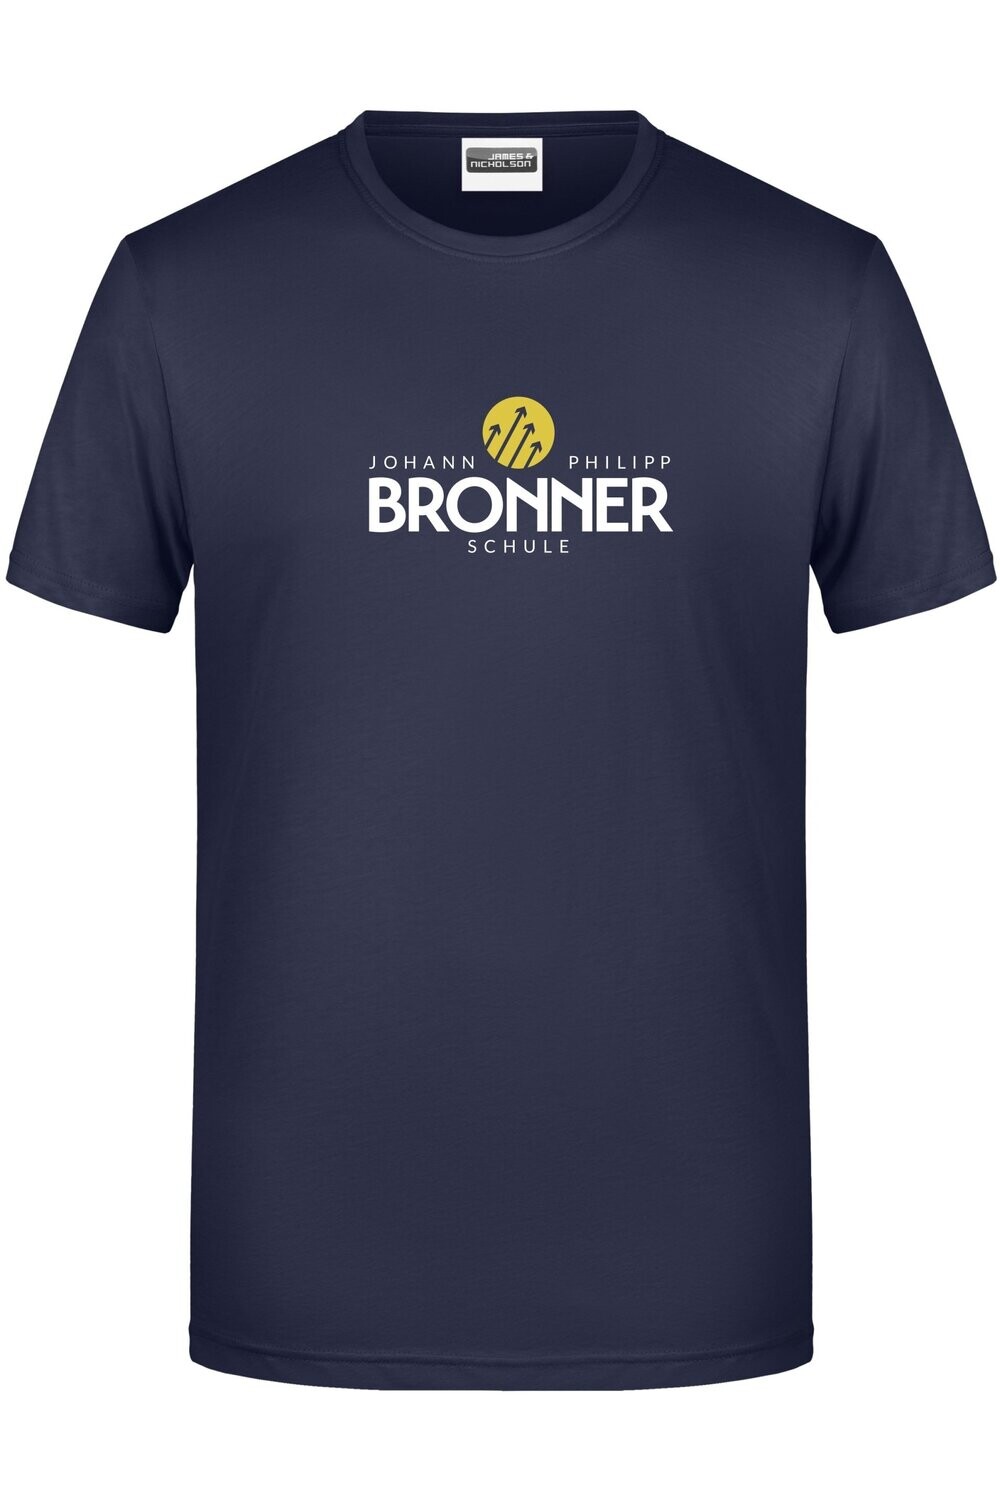 Johann Philipp Bronner Herren Bio-Baumwoll-Shirt